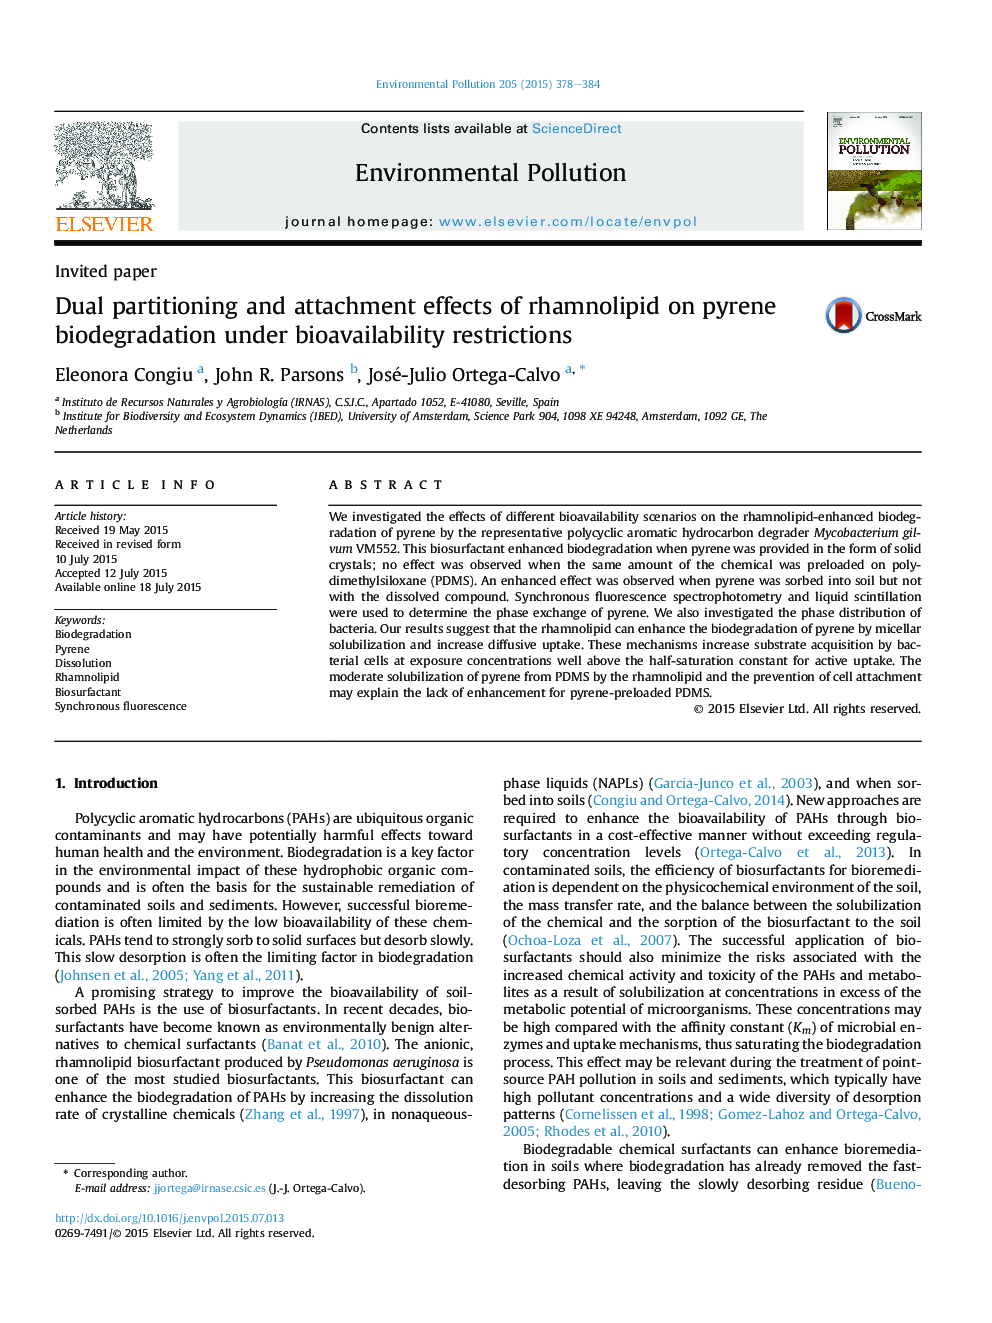 اثرات پارتیشن بندی دو طرفه و دلبستگی رامنولیپید بر تجزیه بیولوژیک پیرن تحت محدودیت های زیست پذیری 